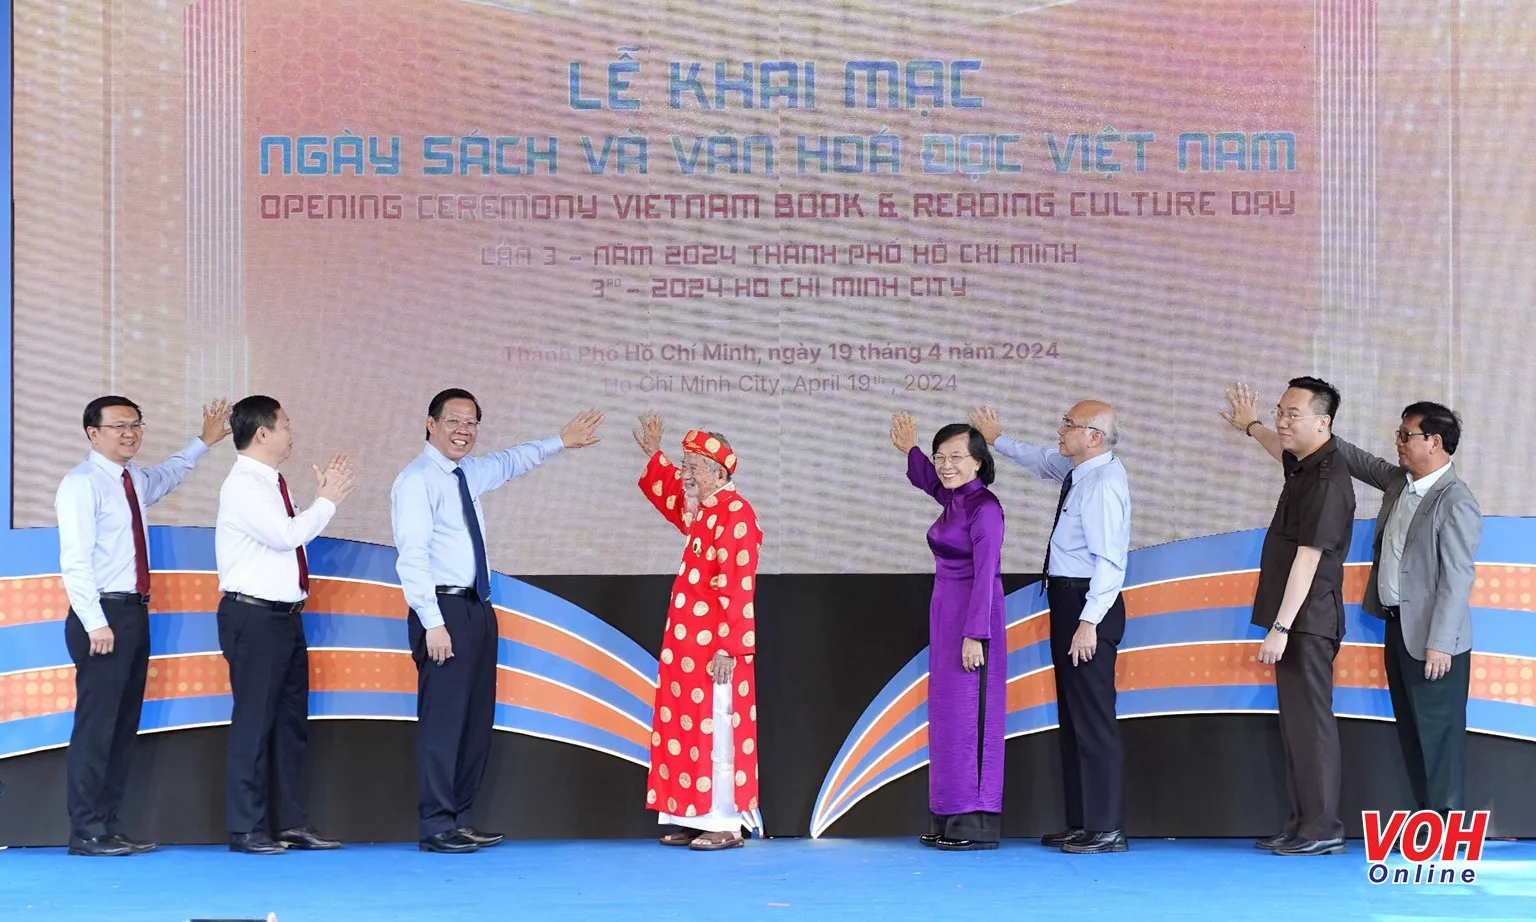 Khai mạc Ngày sách và Văn hóa đọc Việt Nam lần 3 năm 2024 tại TPHCM